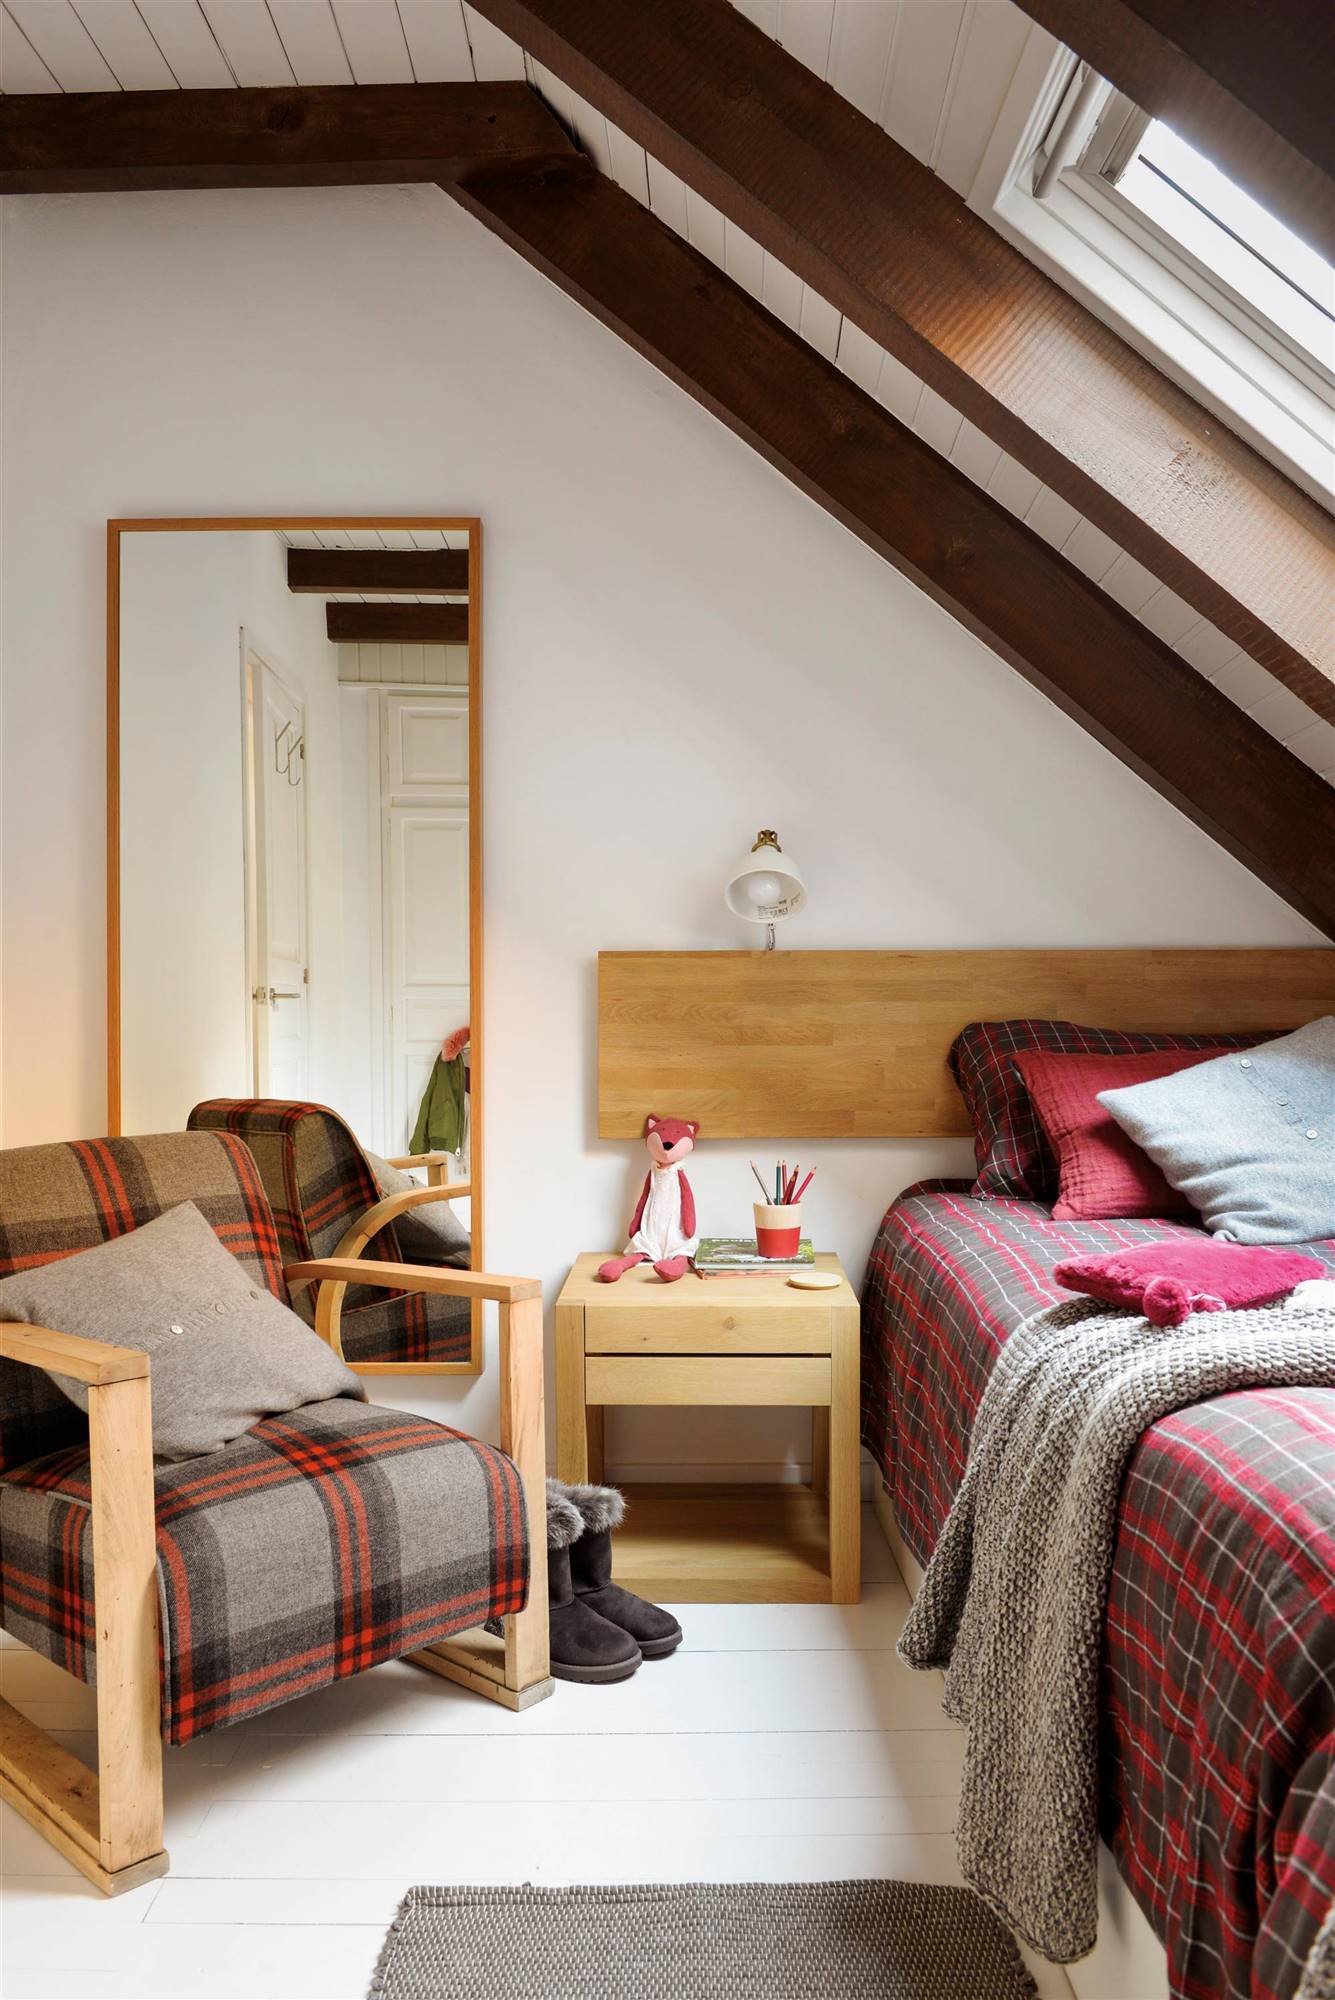 Dormitorio rústico con butaca, ropa de cama de cuadros y cabecero hecho con tablero de madera.